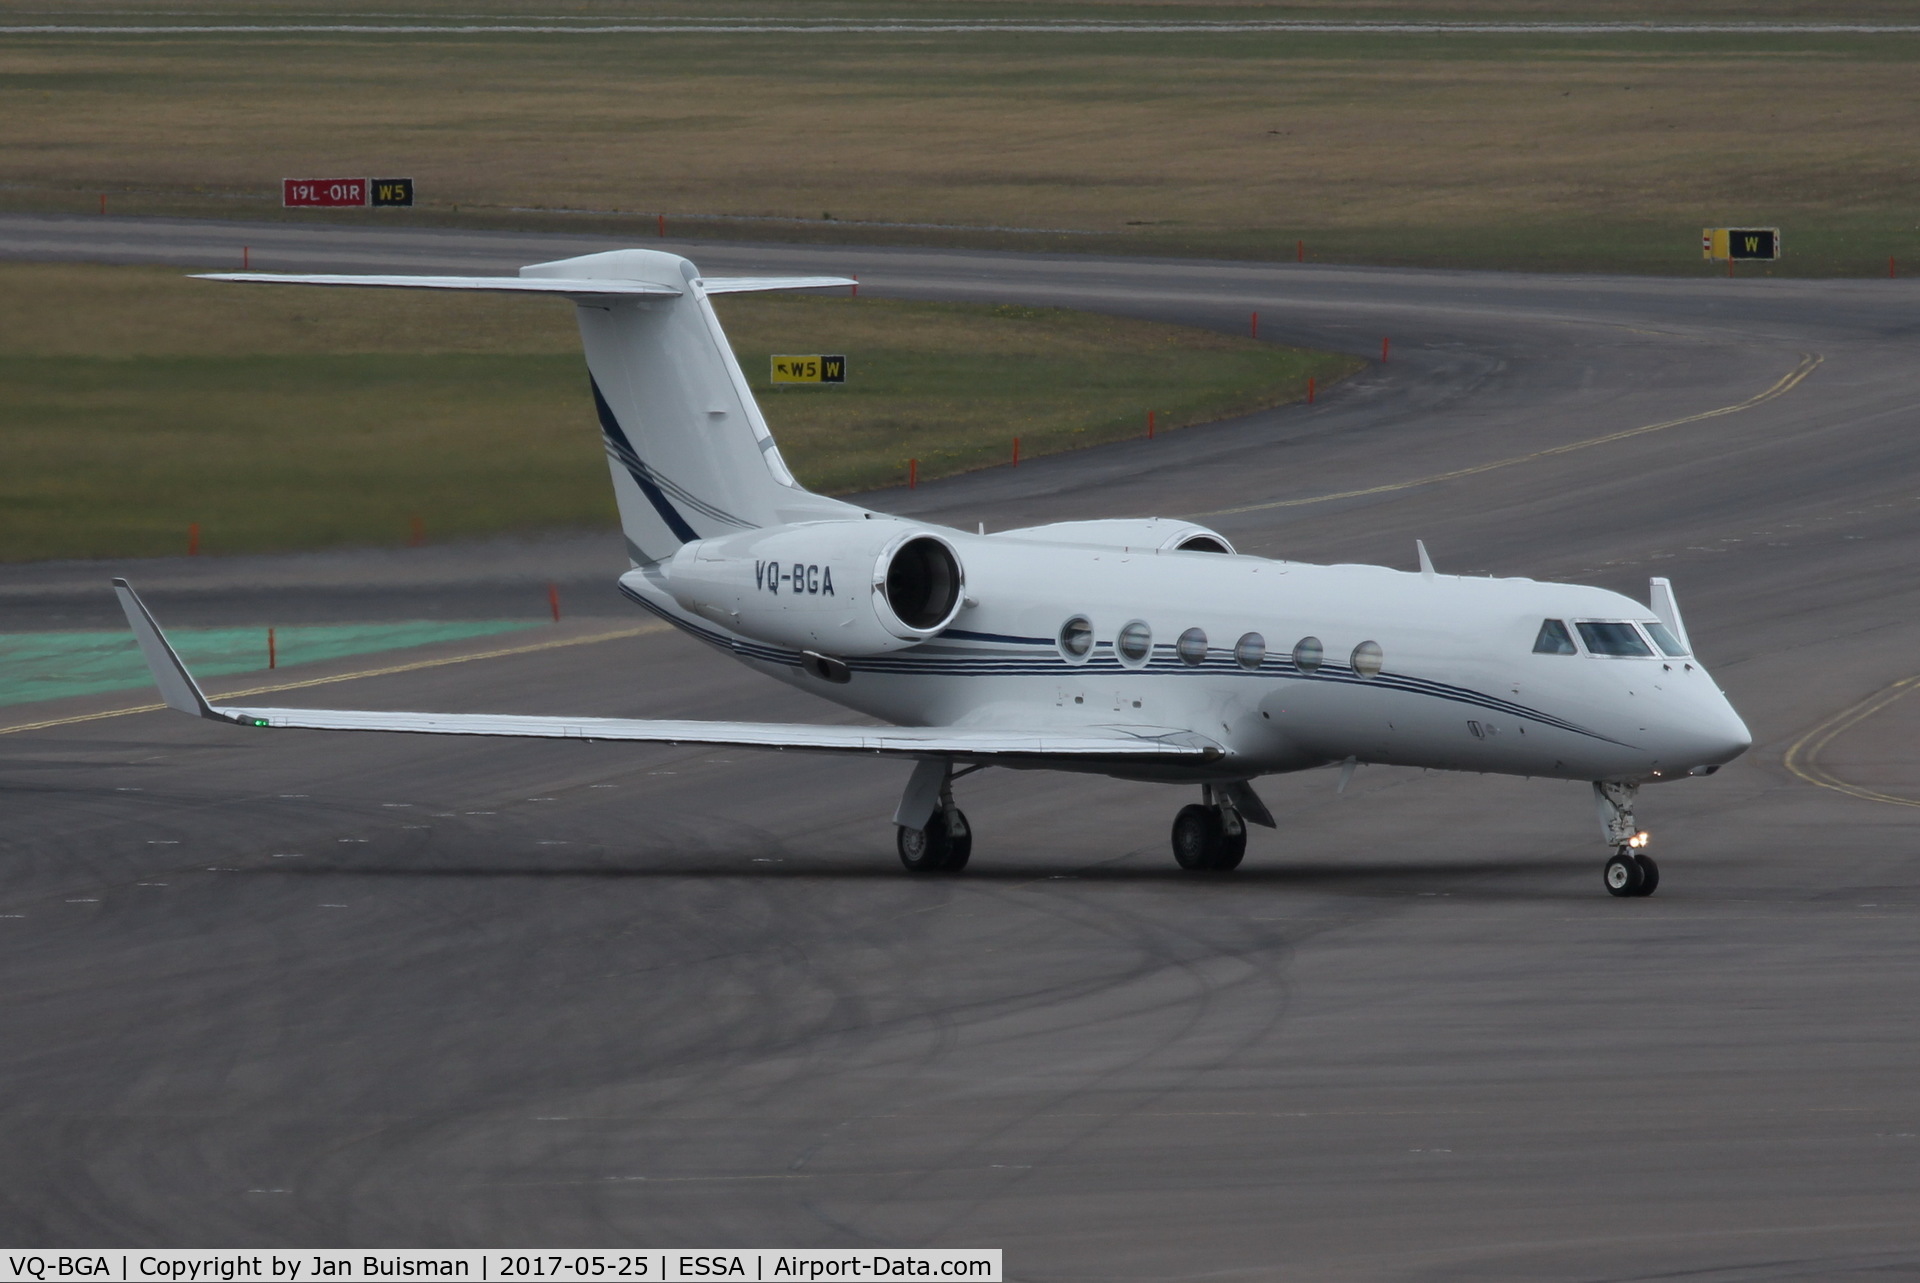 VQ-BGA, 2007 Gulfstream Aerospace GIV-X C/N 4092, taxi from rwy 01R